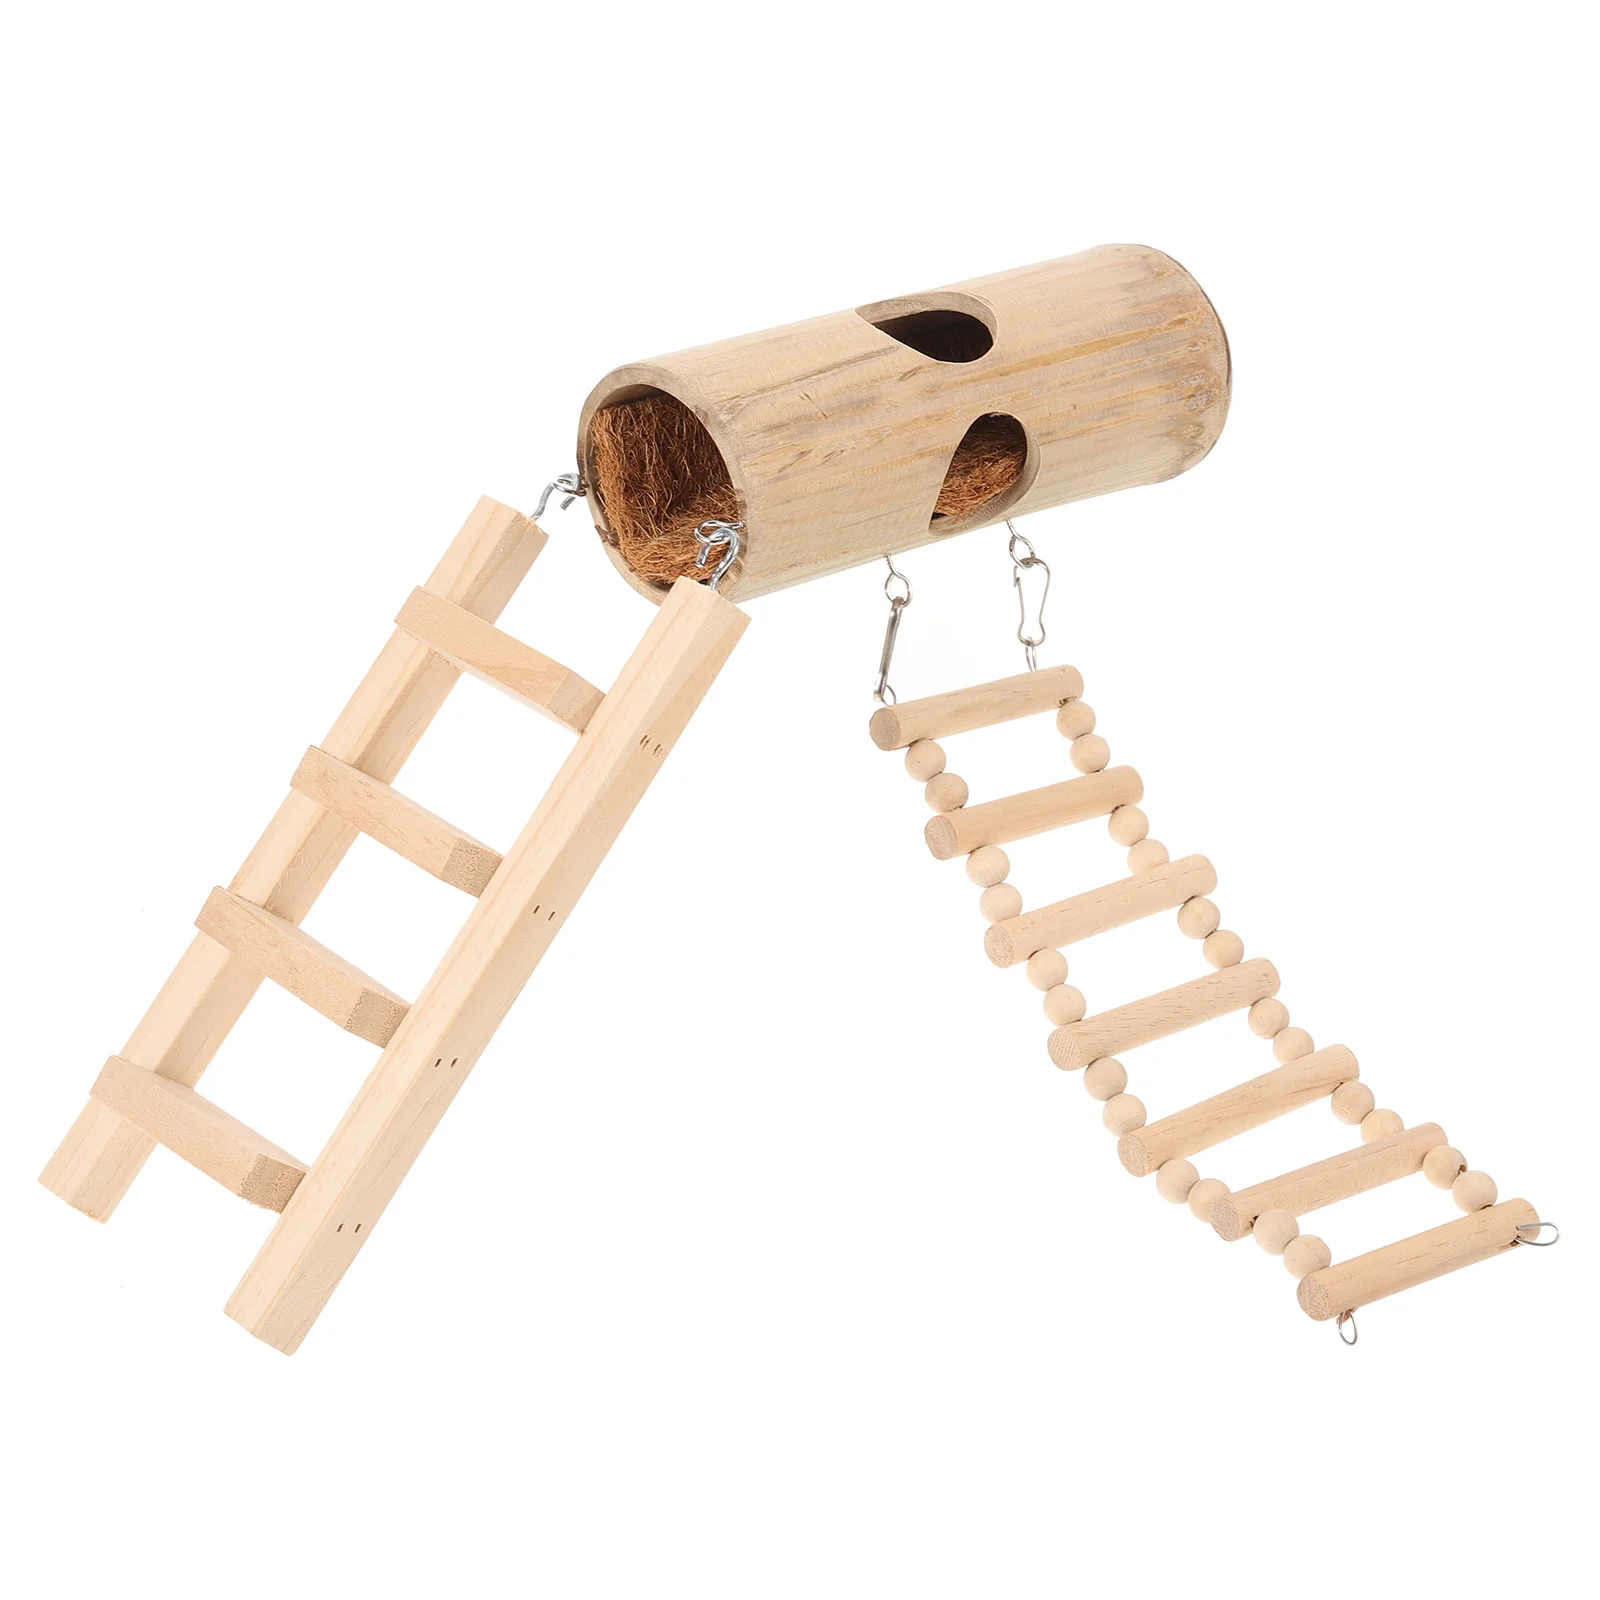 Игрушки для попугаев, лестница для гнезда хомяка, декоративная спальная клетка для разведения птиц, бамбуковый домик Изображение 0